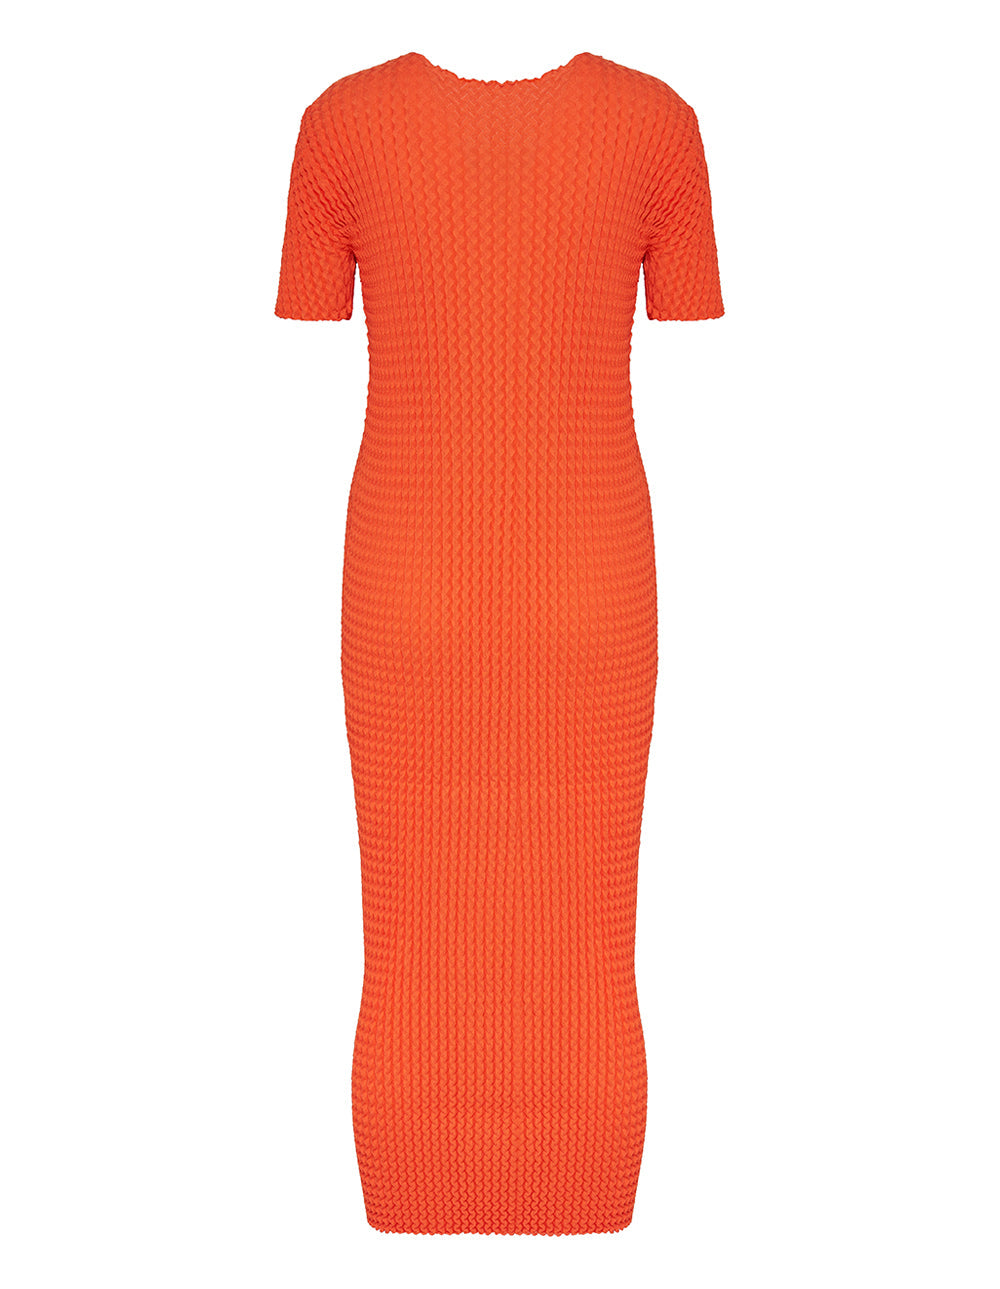 Spongy-46 Knit Dress